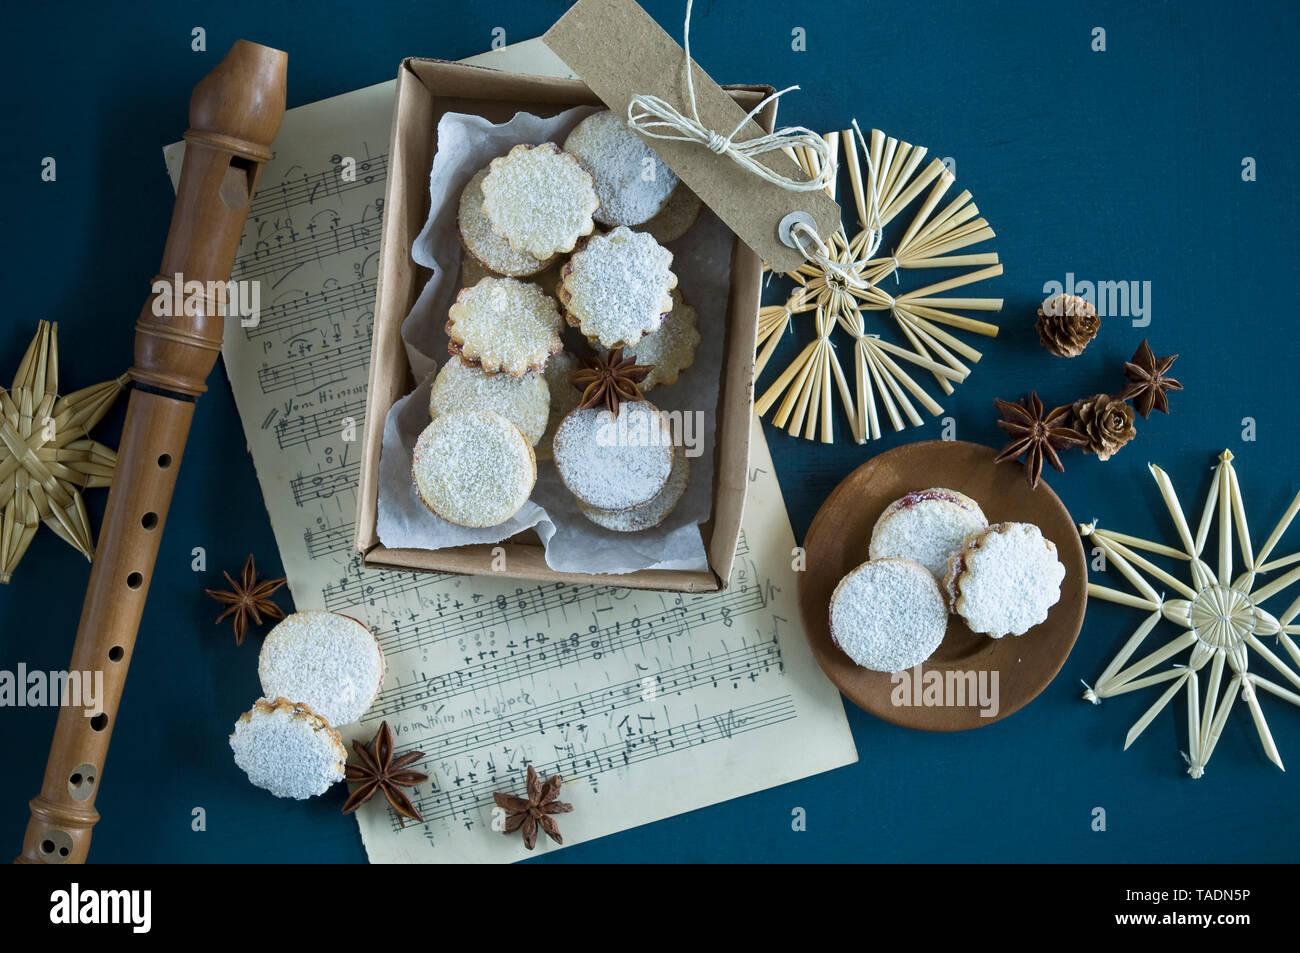 Cookies de Noël Spitzbuben dans une boîte, feuille de musique, enregistreur, étoiles de paille, l'anis étoilé, les cônes de mélèze, gift tag Banque D'Images